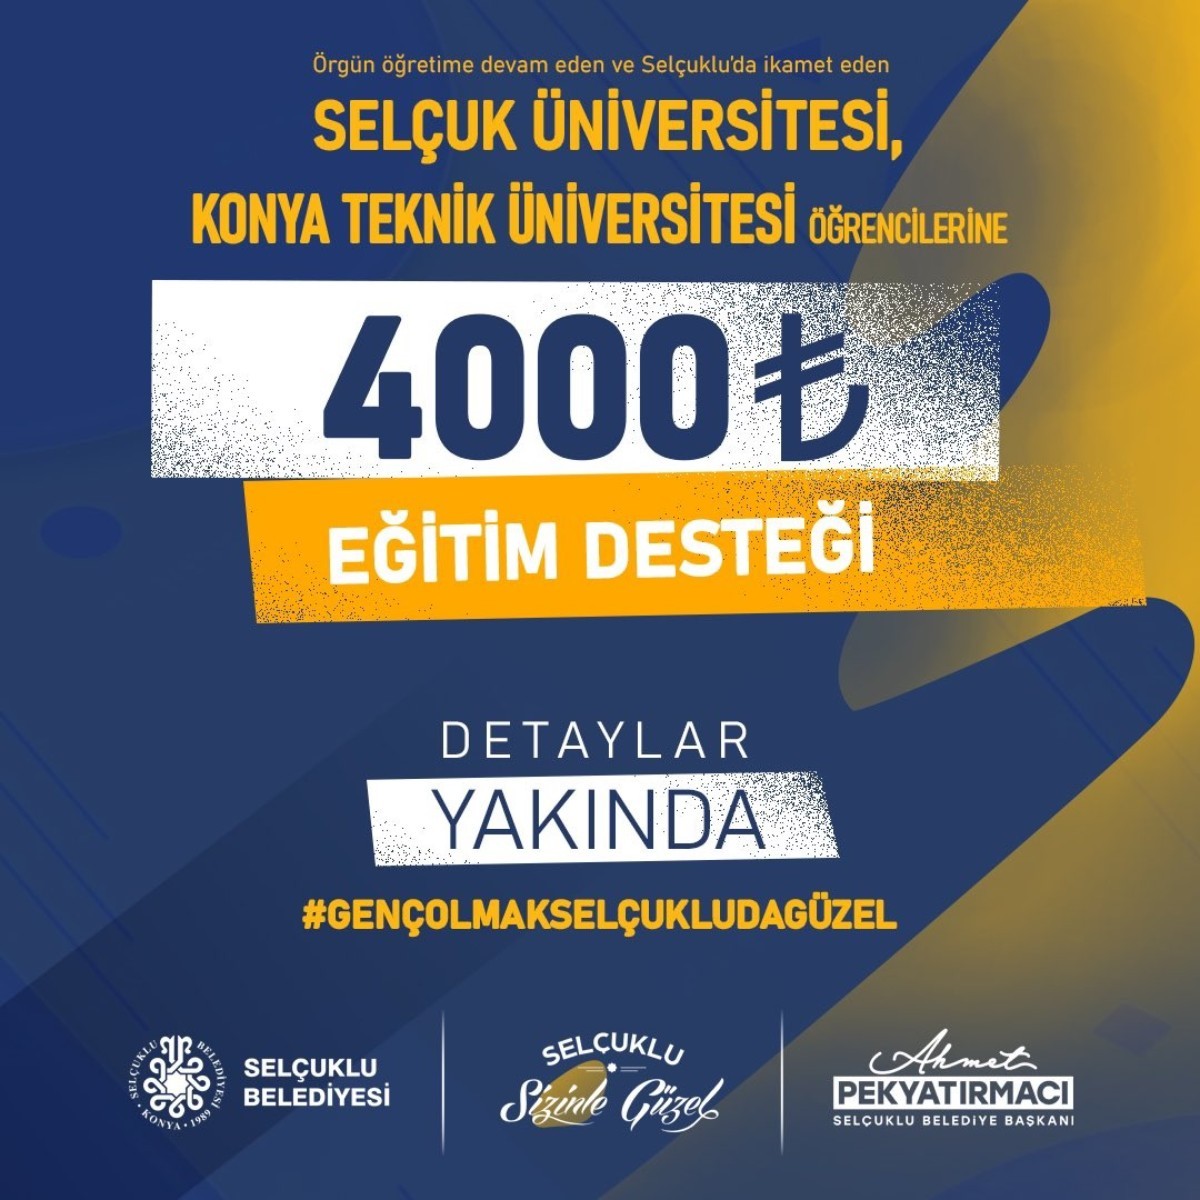 Selçuklu'da ikamet eden öğrencilere belediyeden 4.000 TL destek